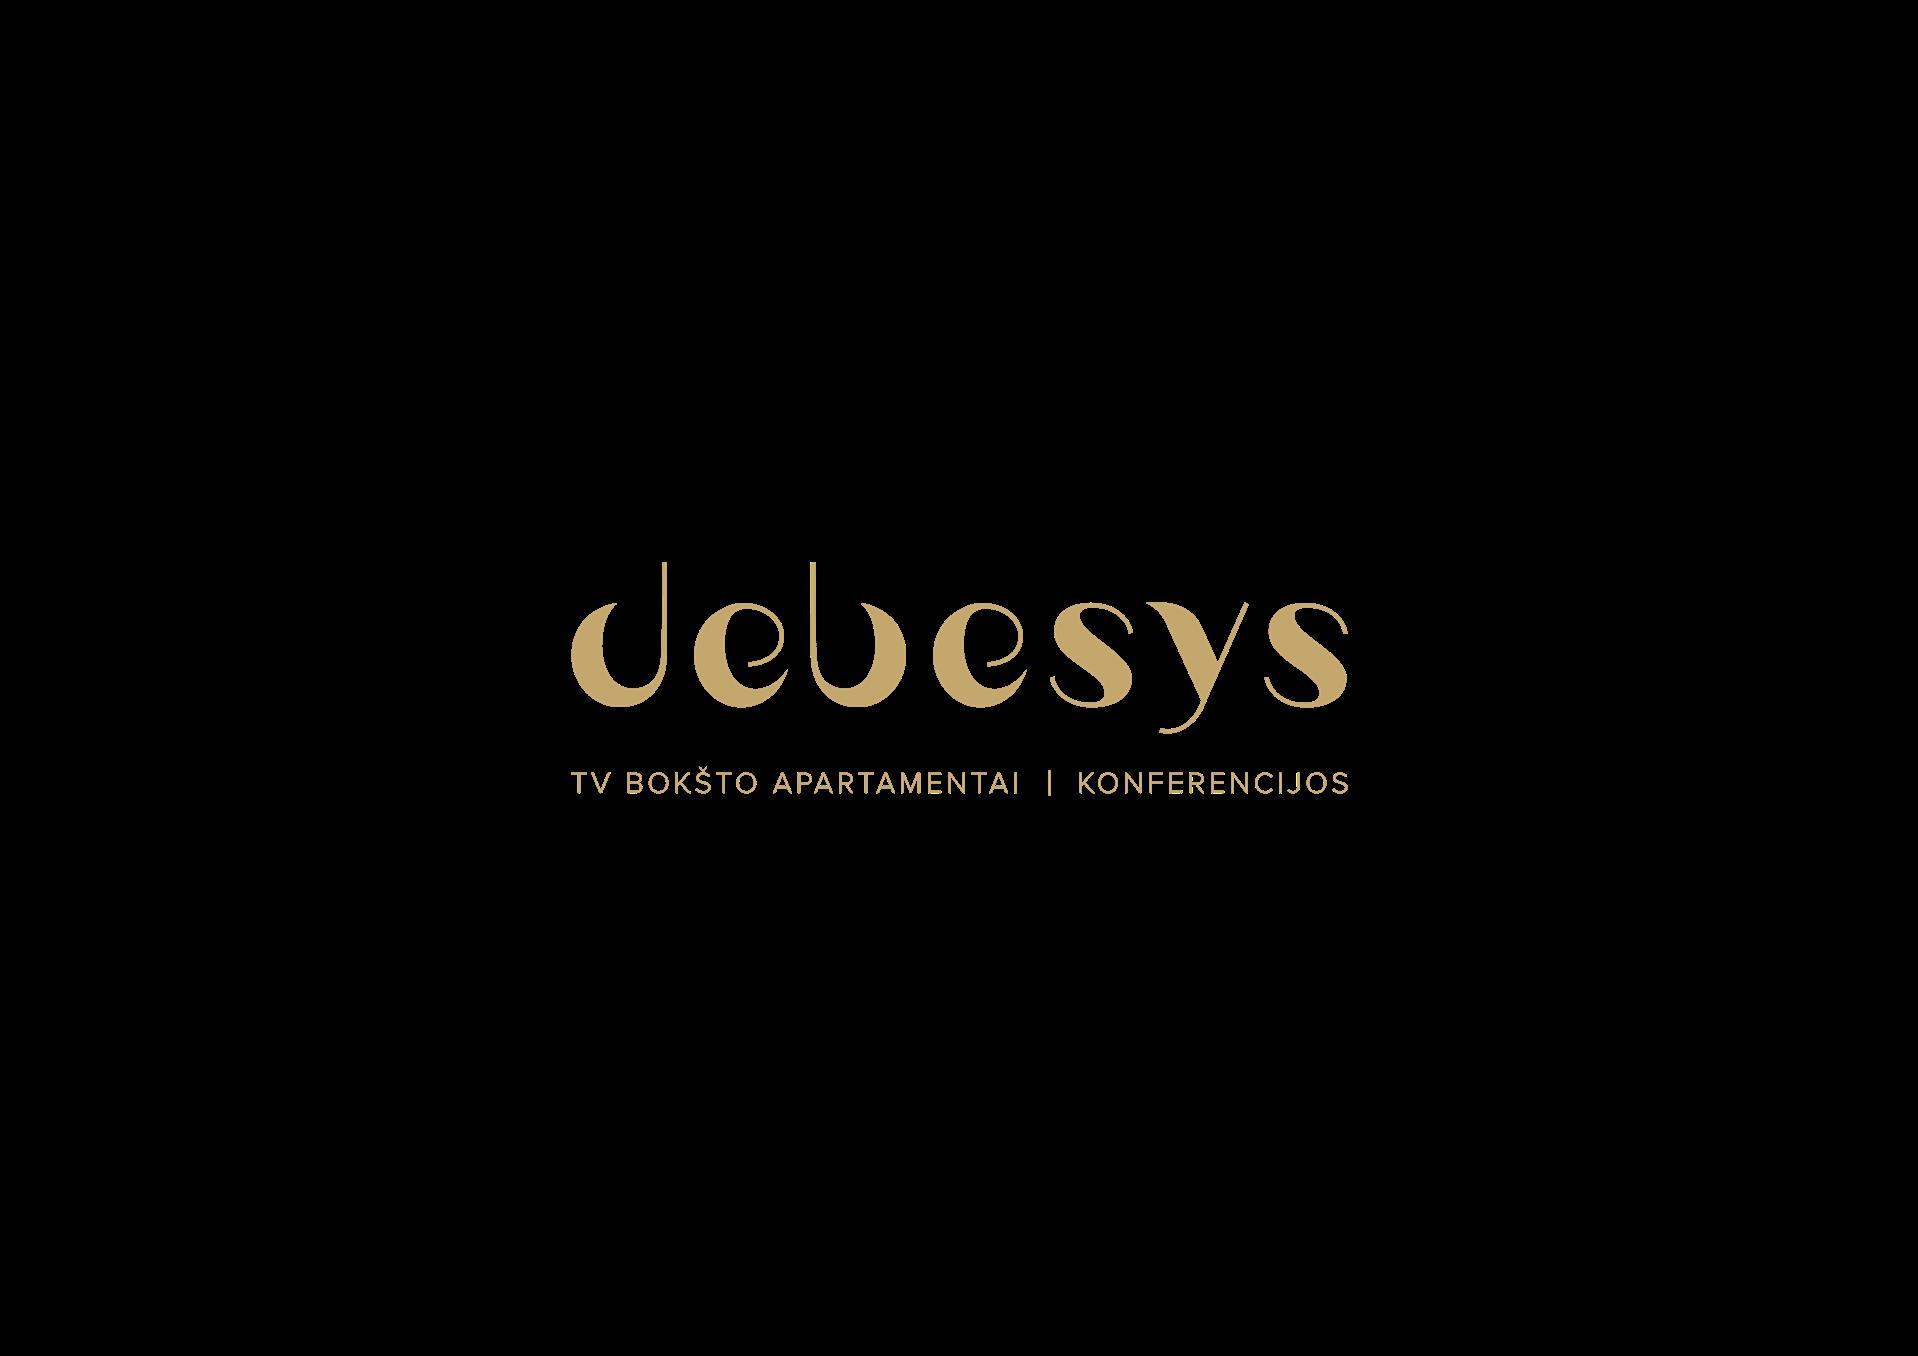 Debesys - TV bokstas in Vilnius, LT